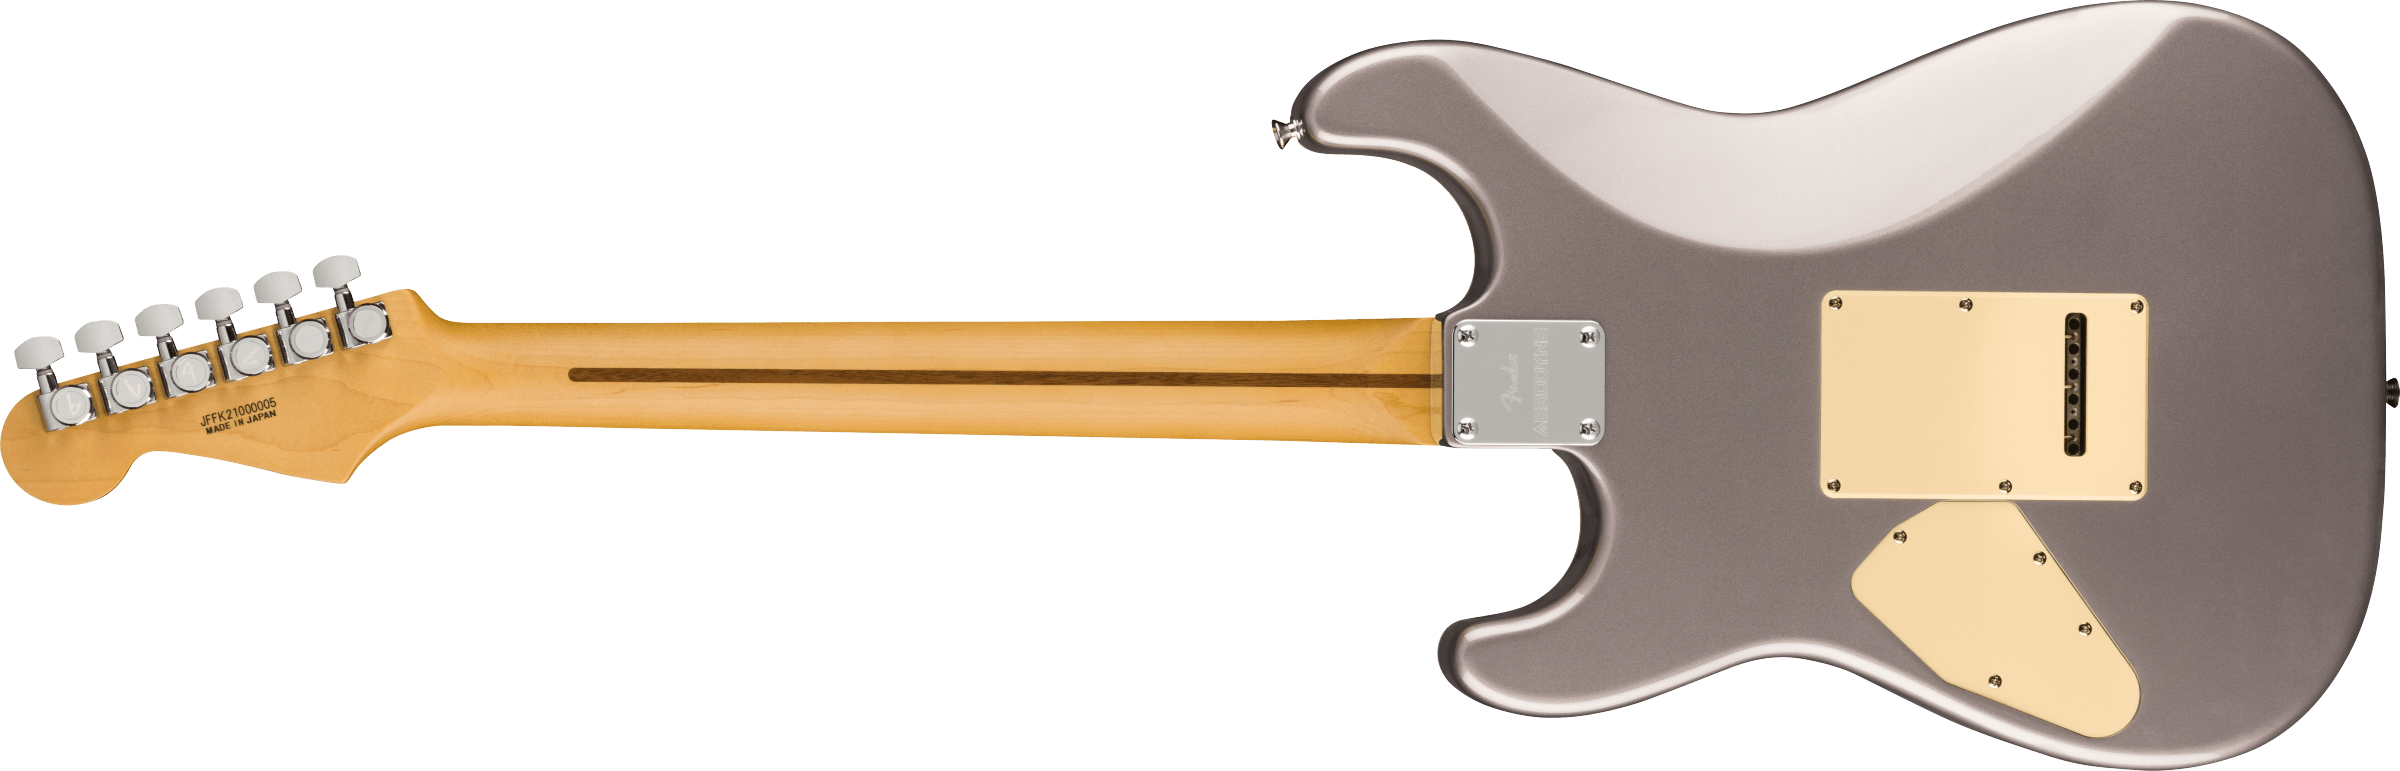 Fender Strat Aerodyne Special Jap Trem Hss Rw - Dolphin Gray Metallic - Elektrische gitaar in Str-vorm - Variation 1